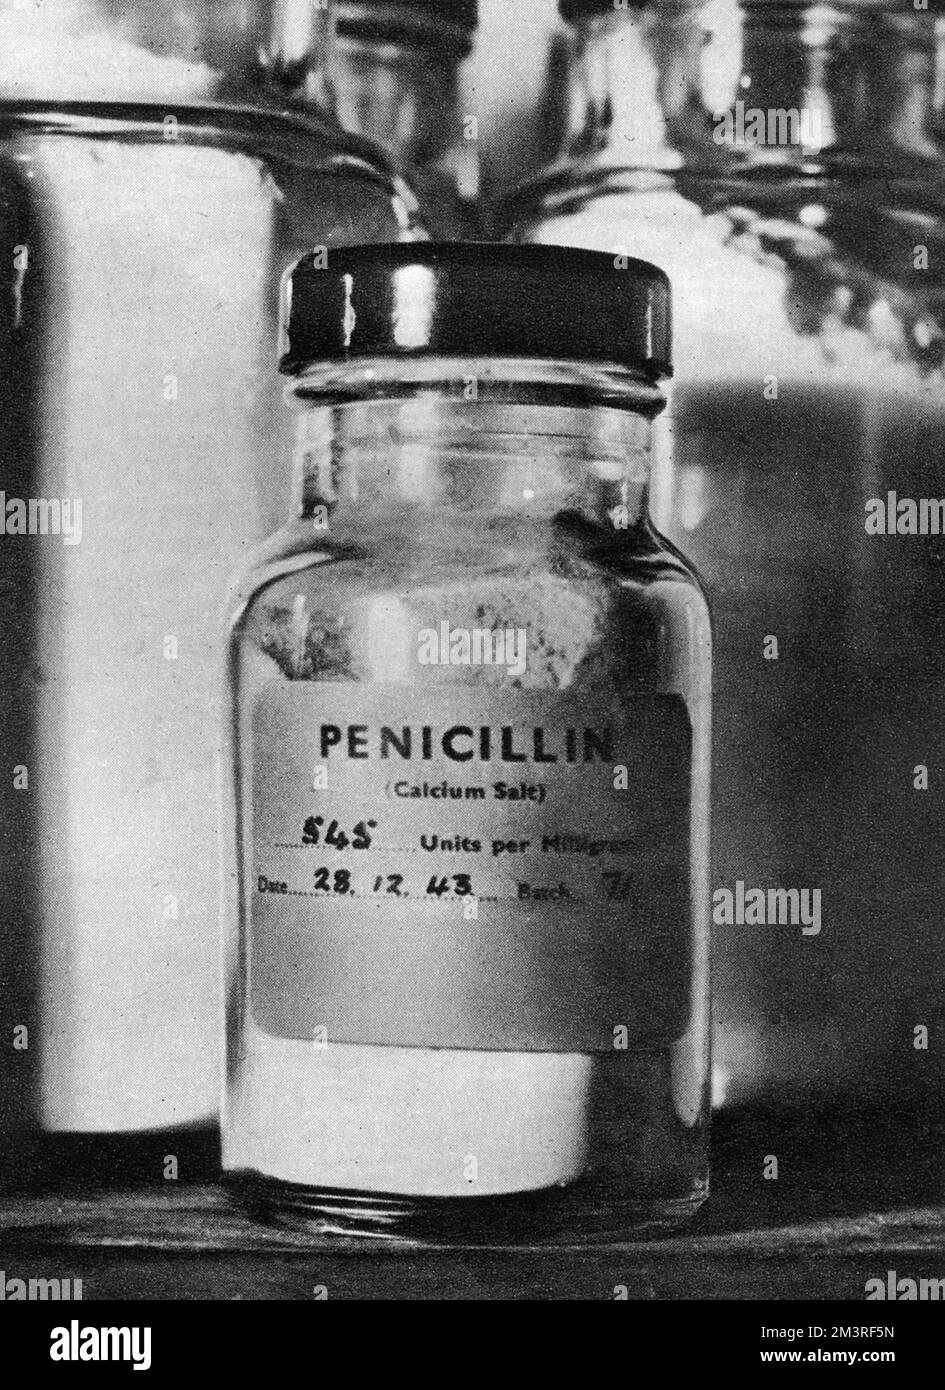 Bottiglia di penicillina (sale di calcio) datata 28/12/1943. La bottiglia contiene abbastanza penicillina per il trattamento di dieci casi di vita treatening. Data: 1944 Foto Stock